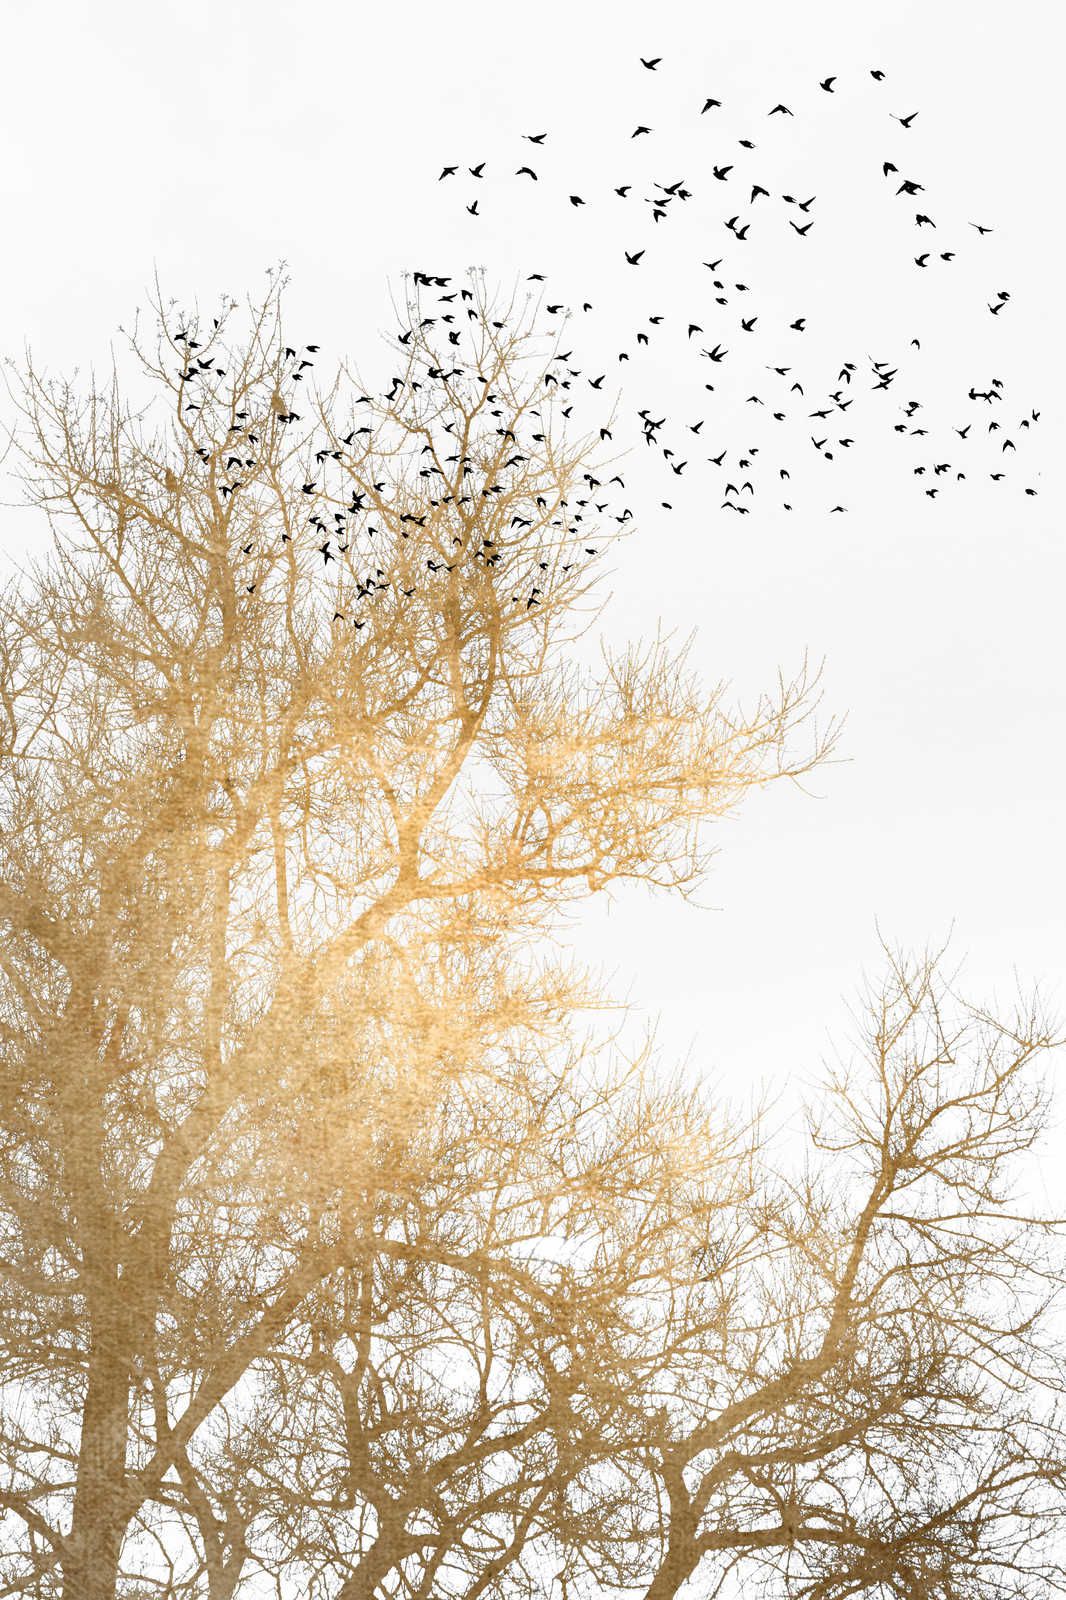             Leinwandbild mit goldenen Bäumen und Vogelschwarm – 0,90 m x 0,60 m
        